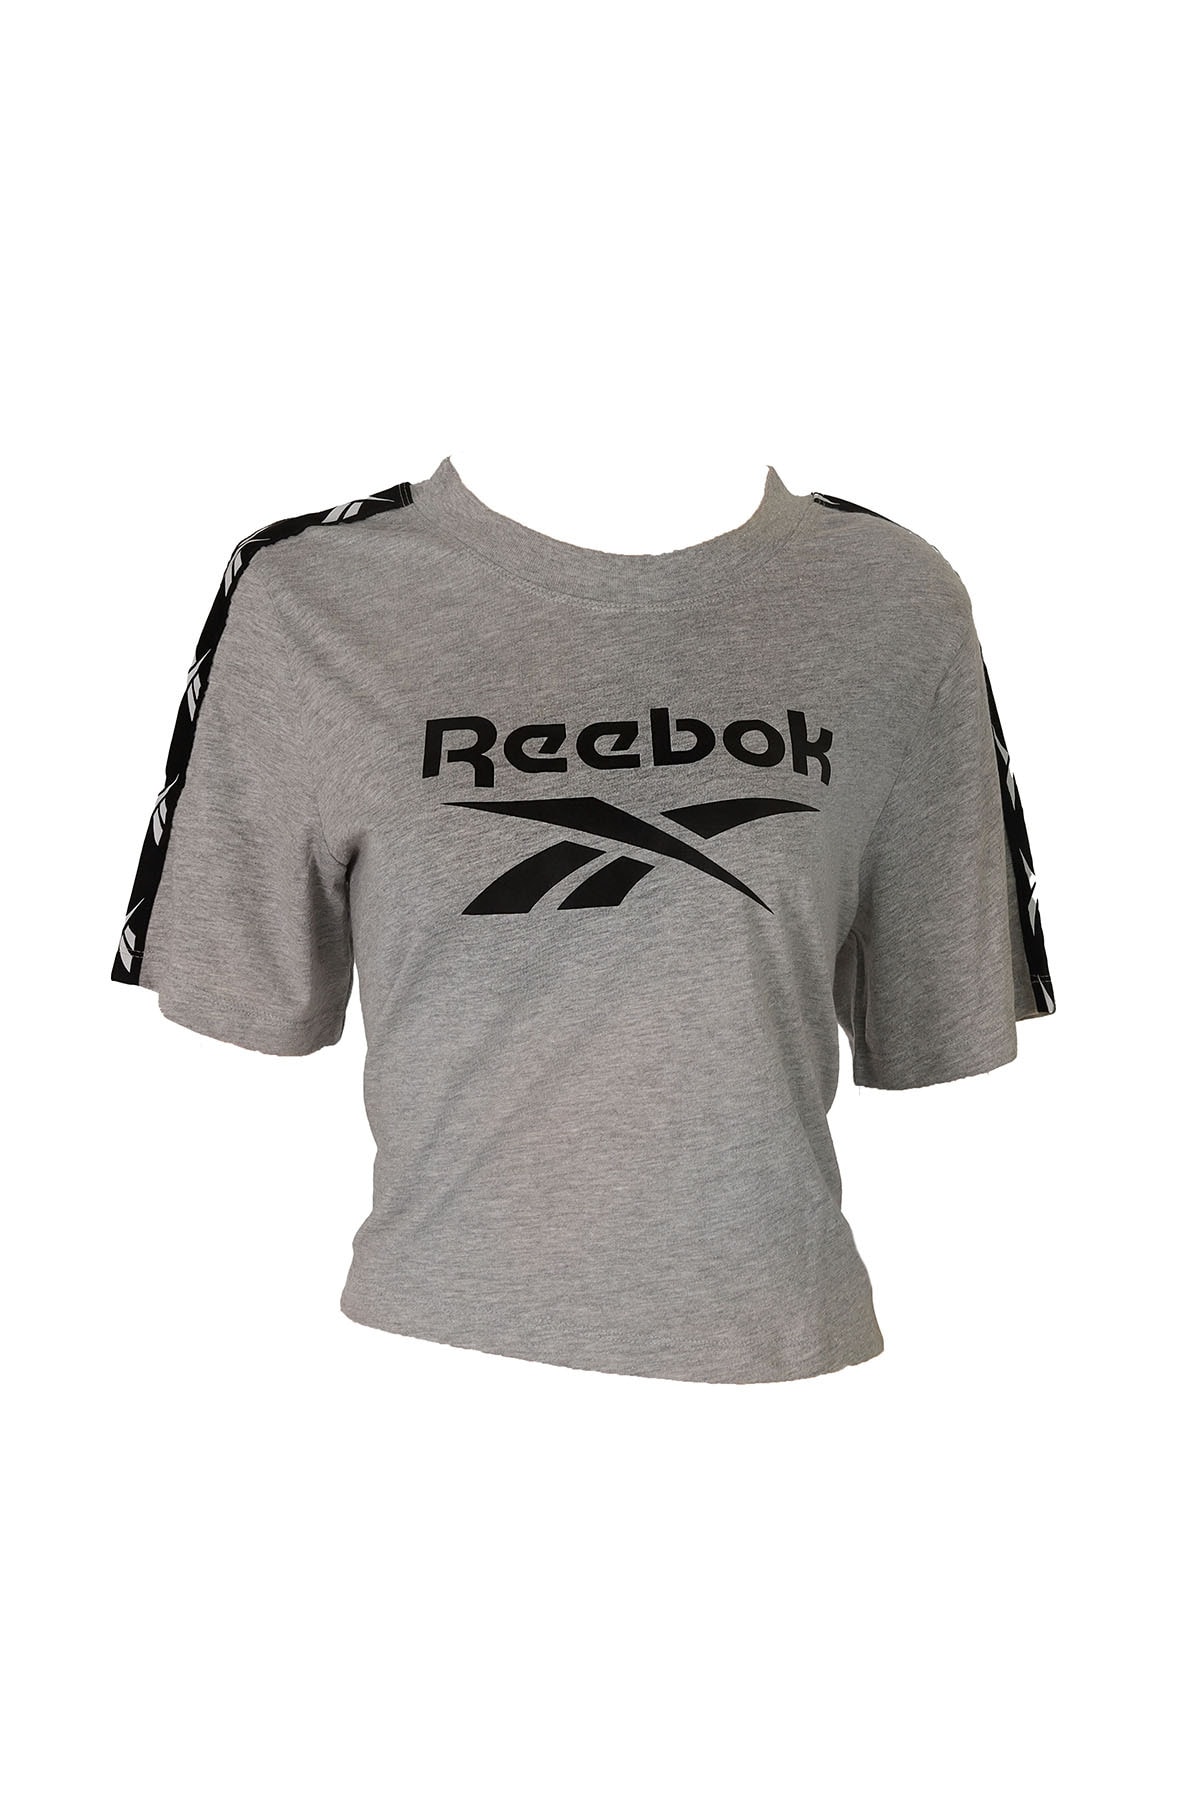 Reebok T-Shirt Grau Regular Fit Fast ausverkauft